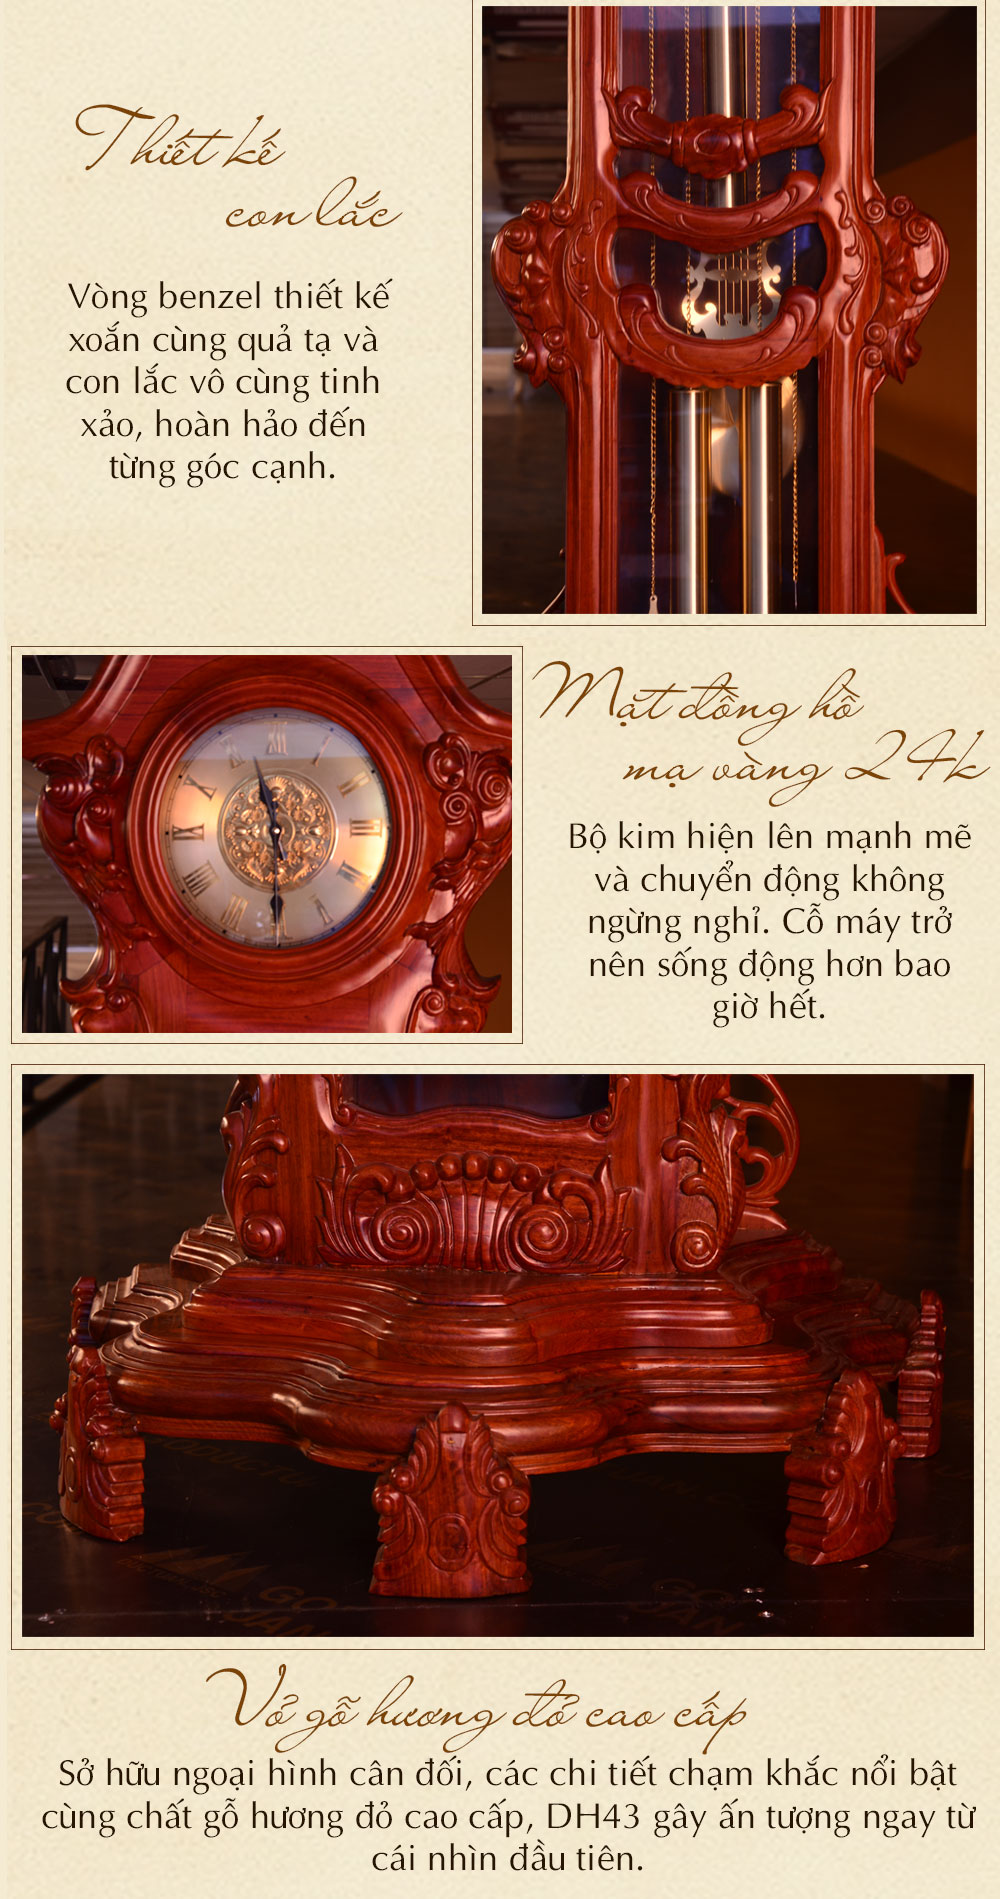 Đồng hồ cây hoa lá tây vân gỗ hương đỏ DH43